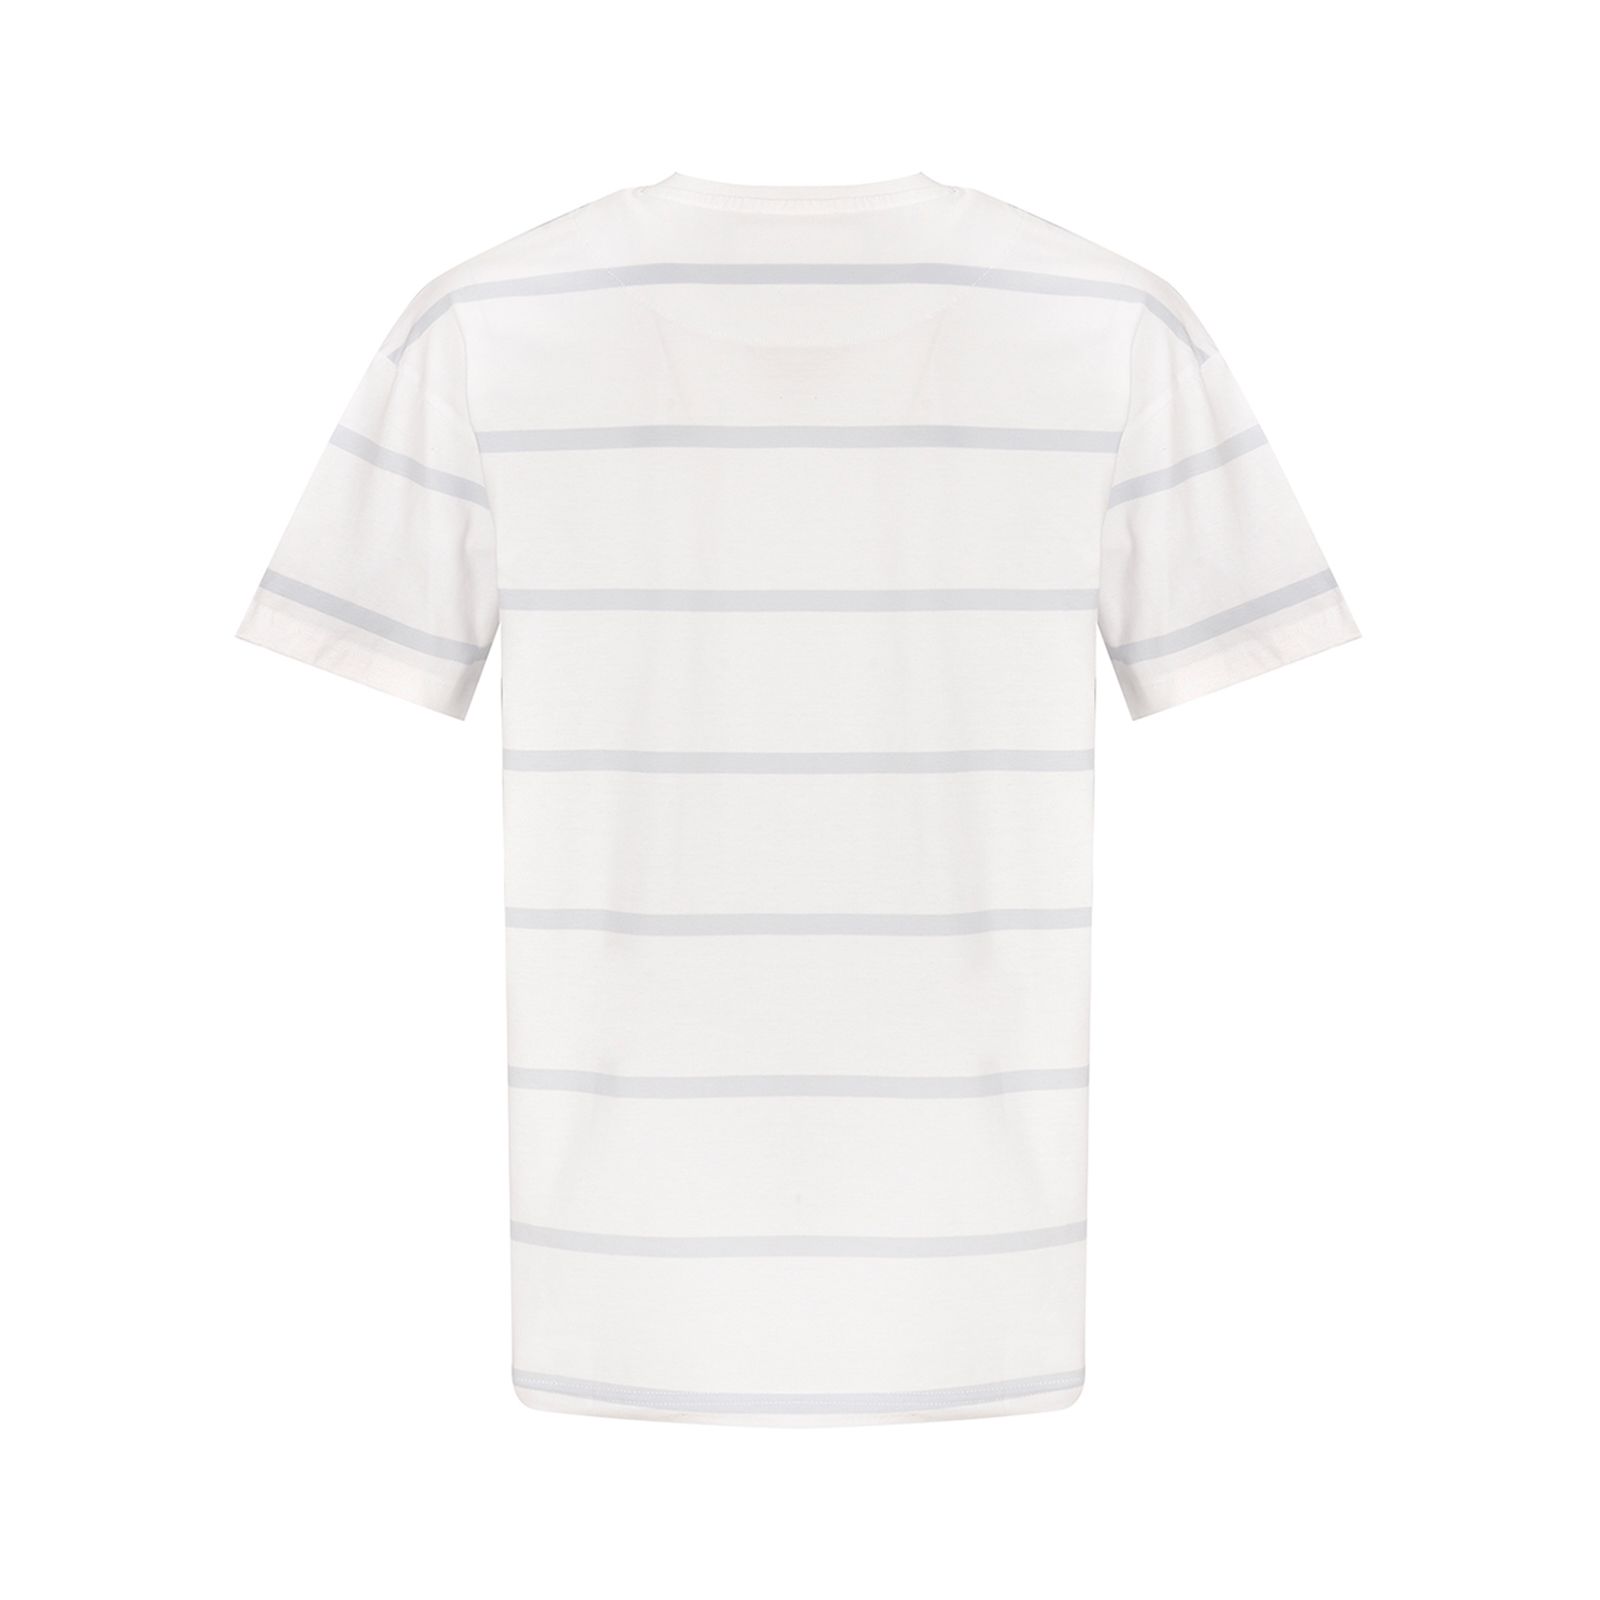 تی شرت آستین کوتاه مردانه بادی اسپینر مدل 3315 کد 1 رنگ آبی -  - 3